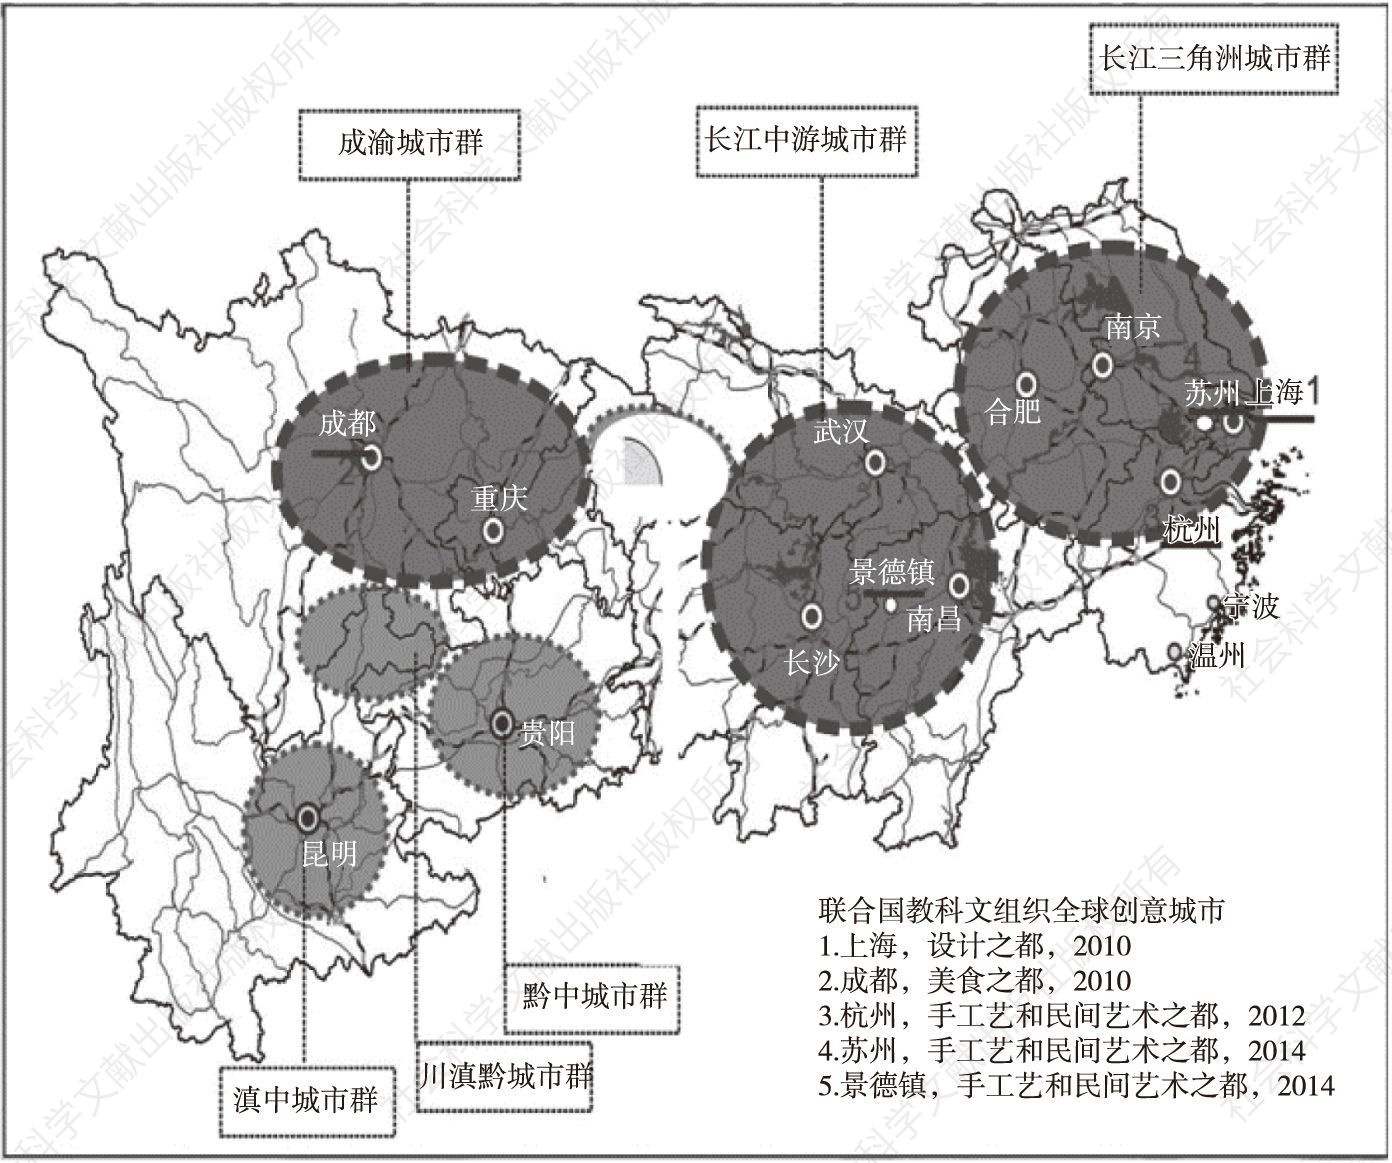 图1 长江经济带上的全球创意城市和主要城市群